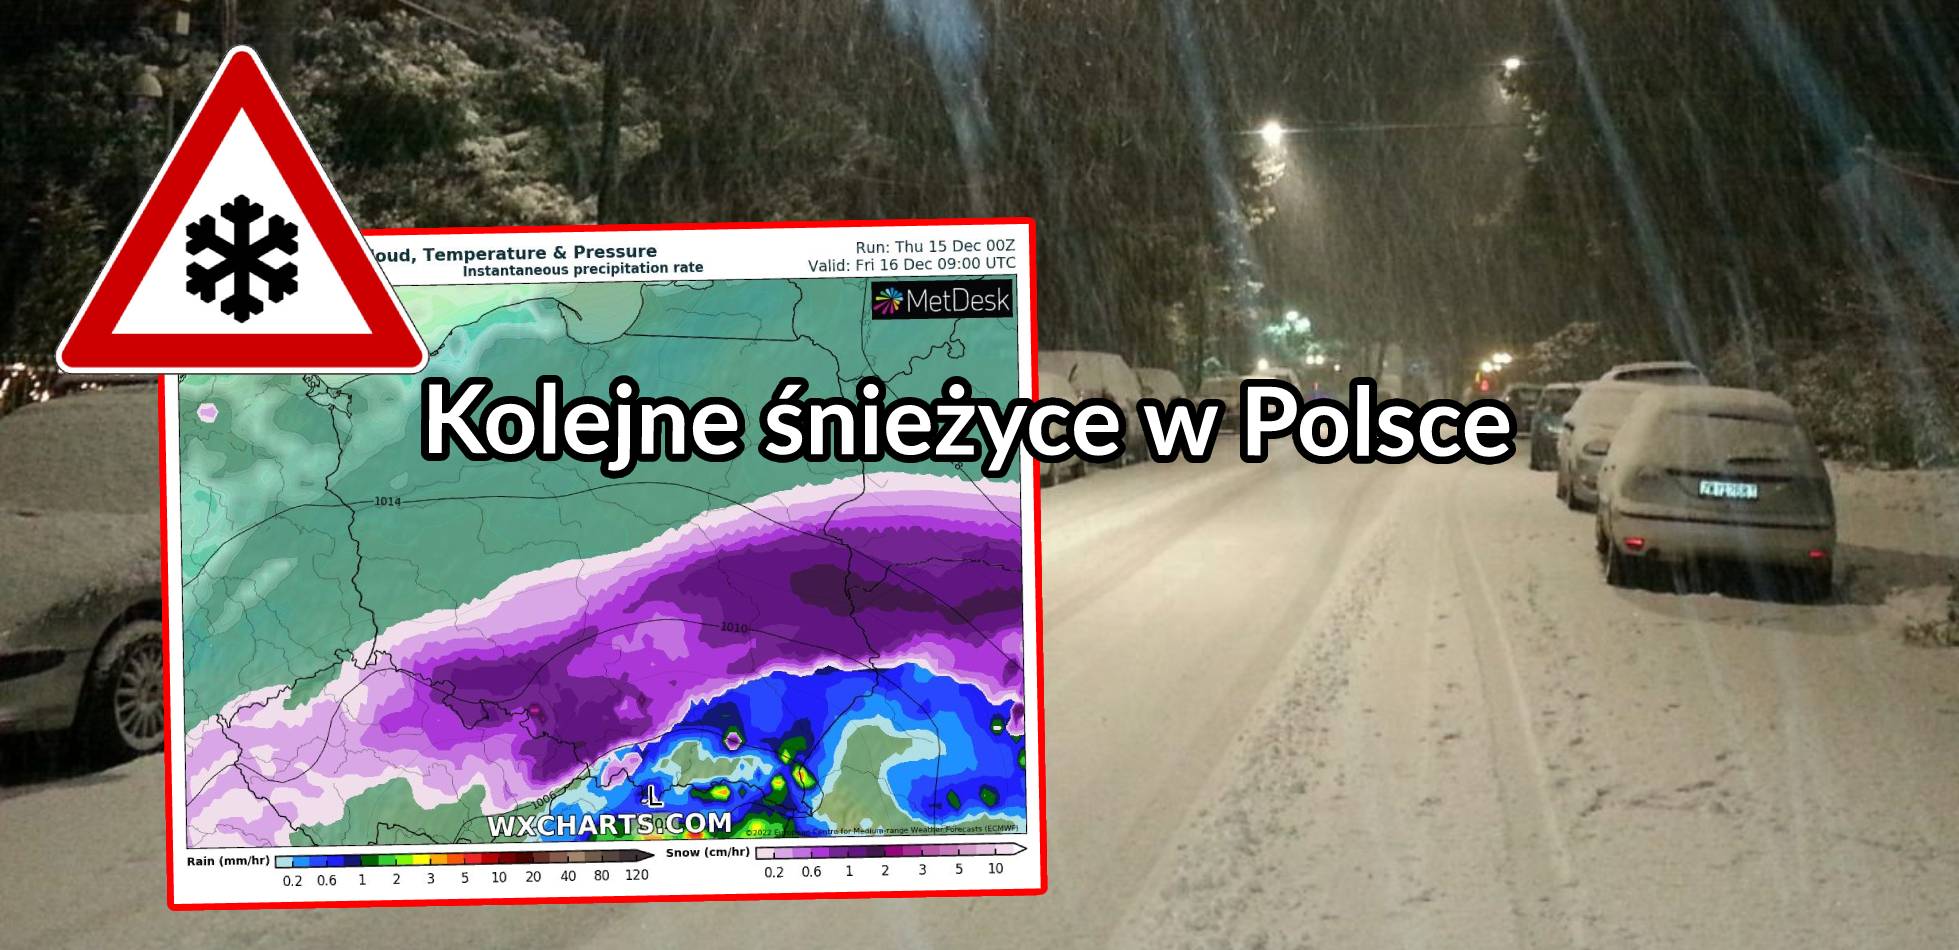 Kolejne śnieżyce pojawią się w Polsce. Lokalnie może spaść 10-15 cm śniegu